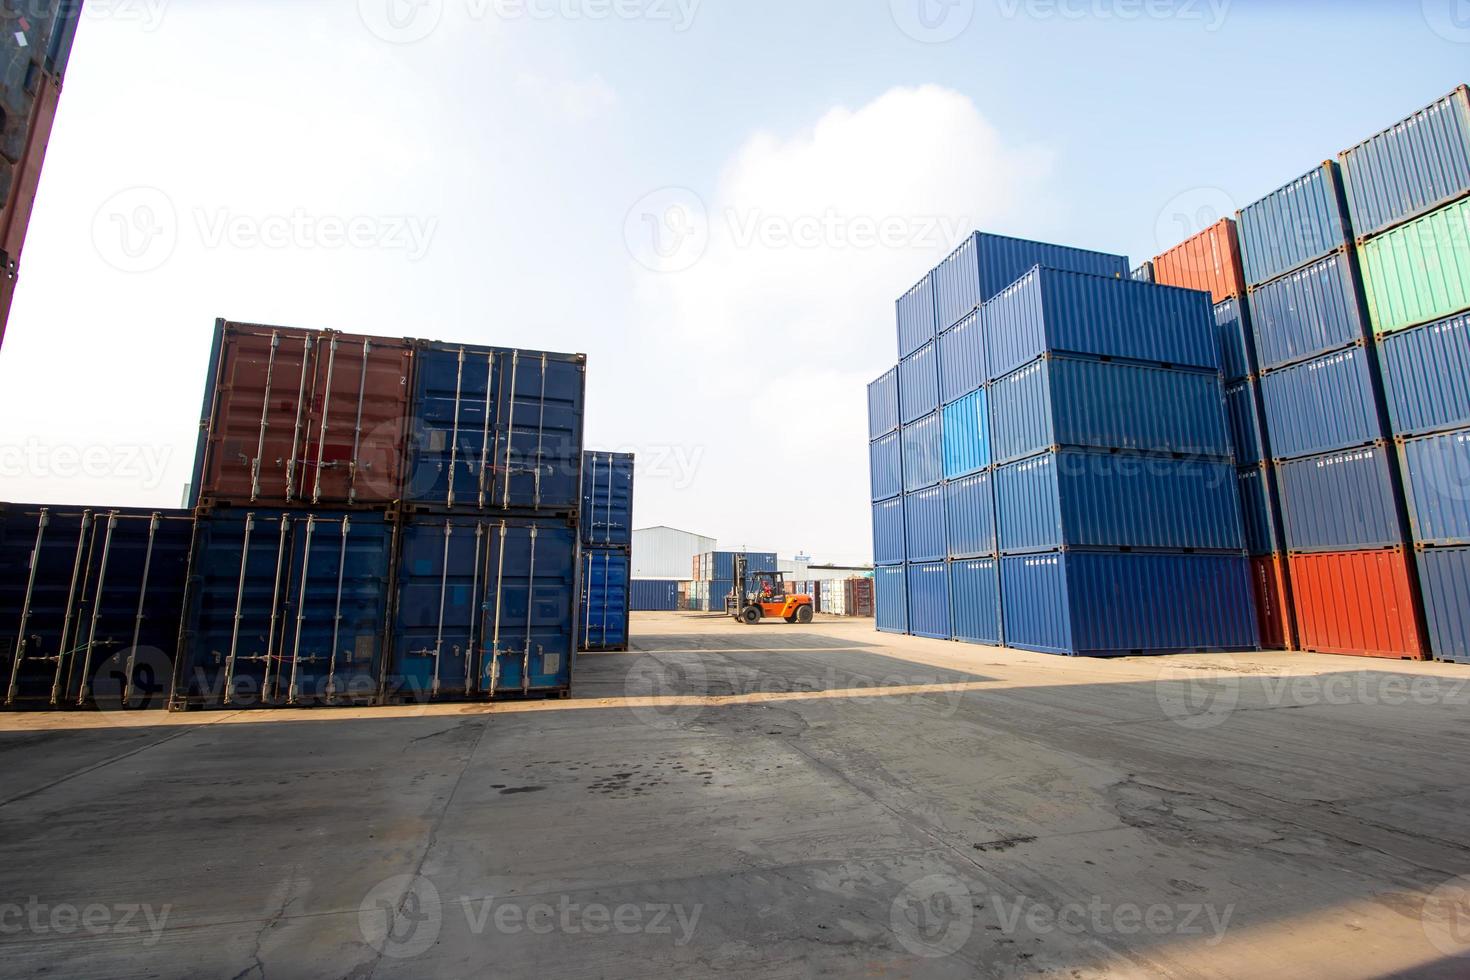 container vrachthaven scheepswerf opslag behandeling van logistieke transportindustrie. rij stapelcontainers vracht import export distributie magazijn. verzending logistiek transport industrieel foto